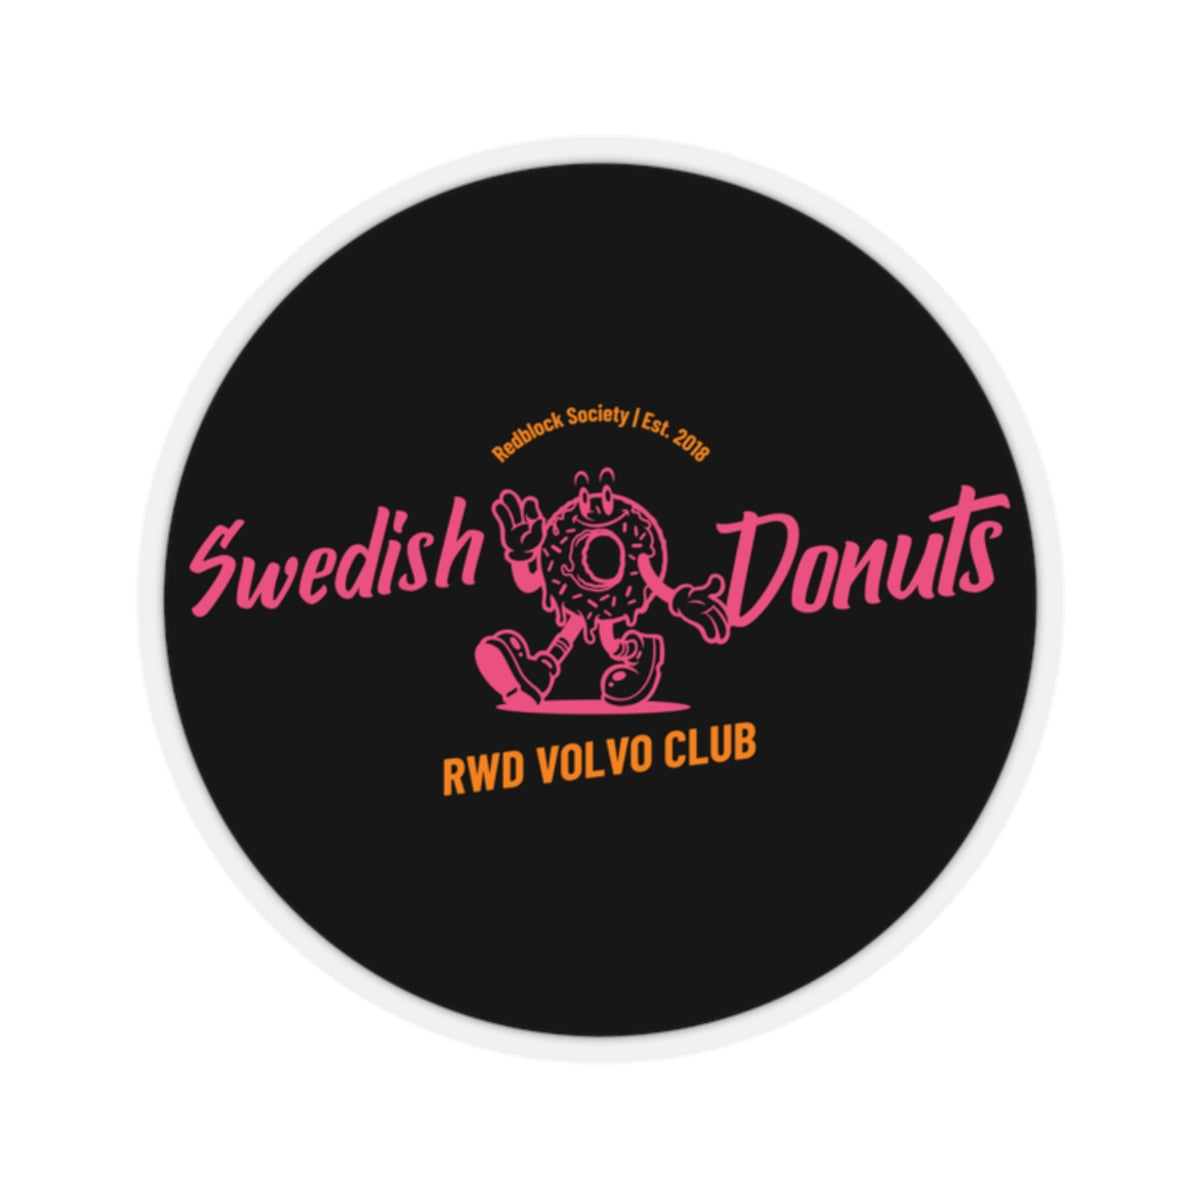 Swedish Donuts Black Sticker